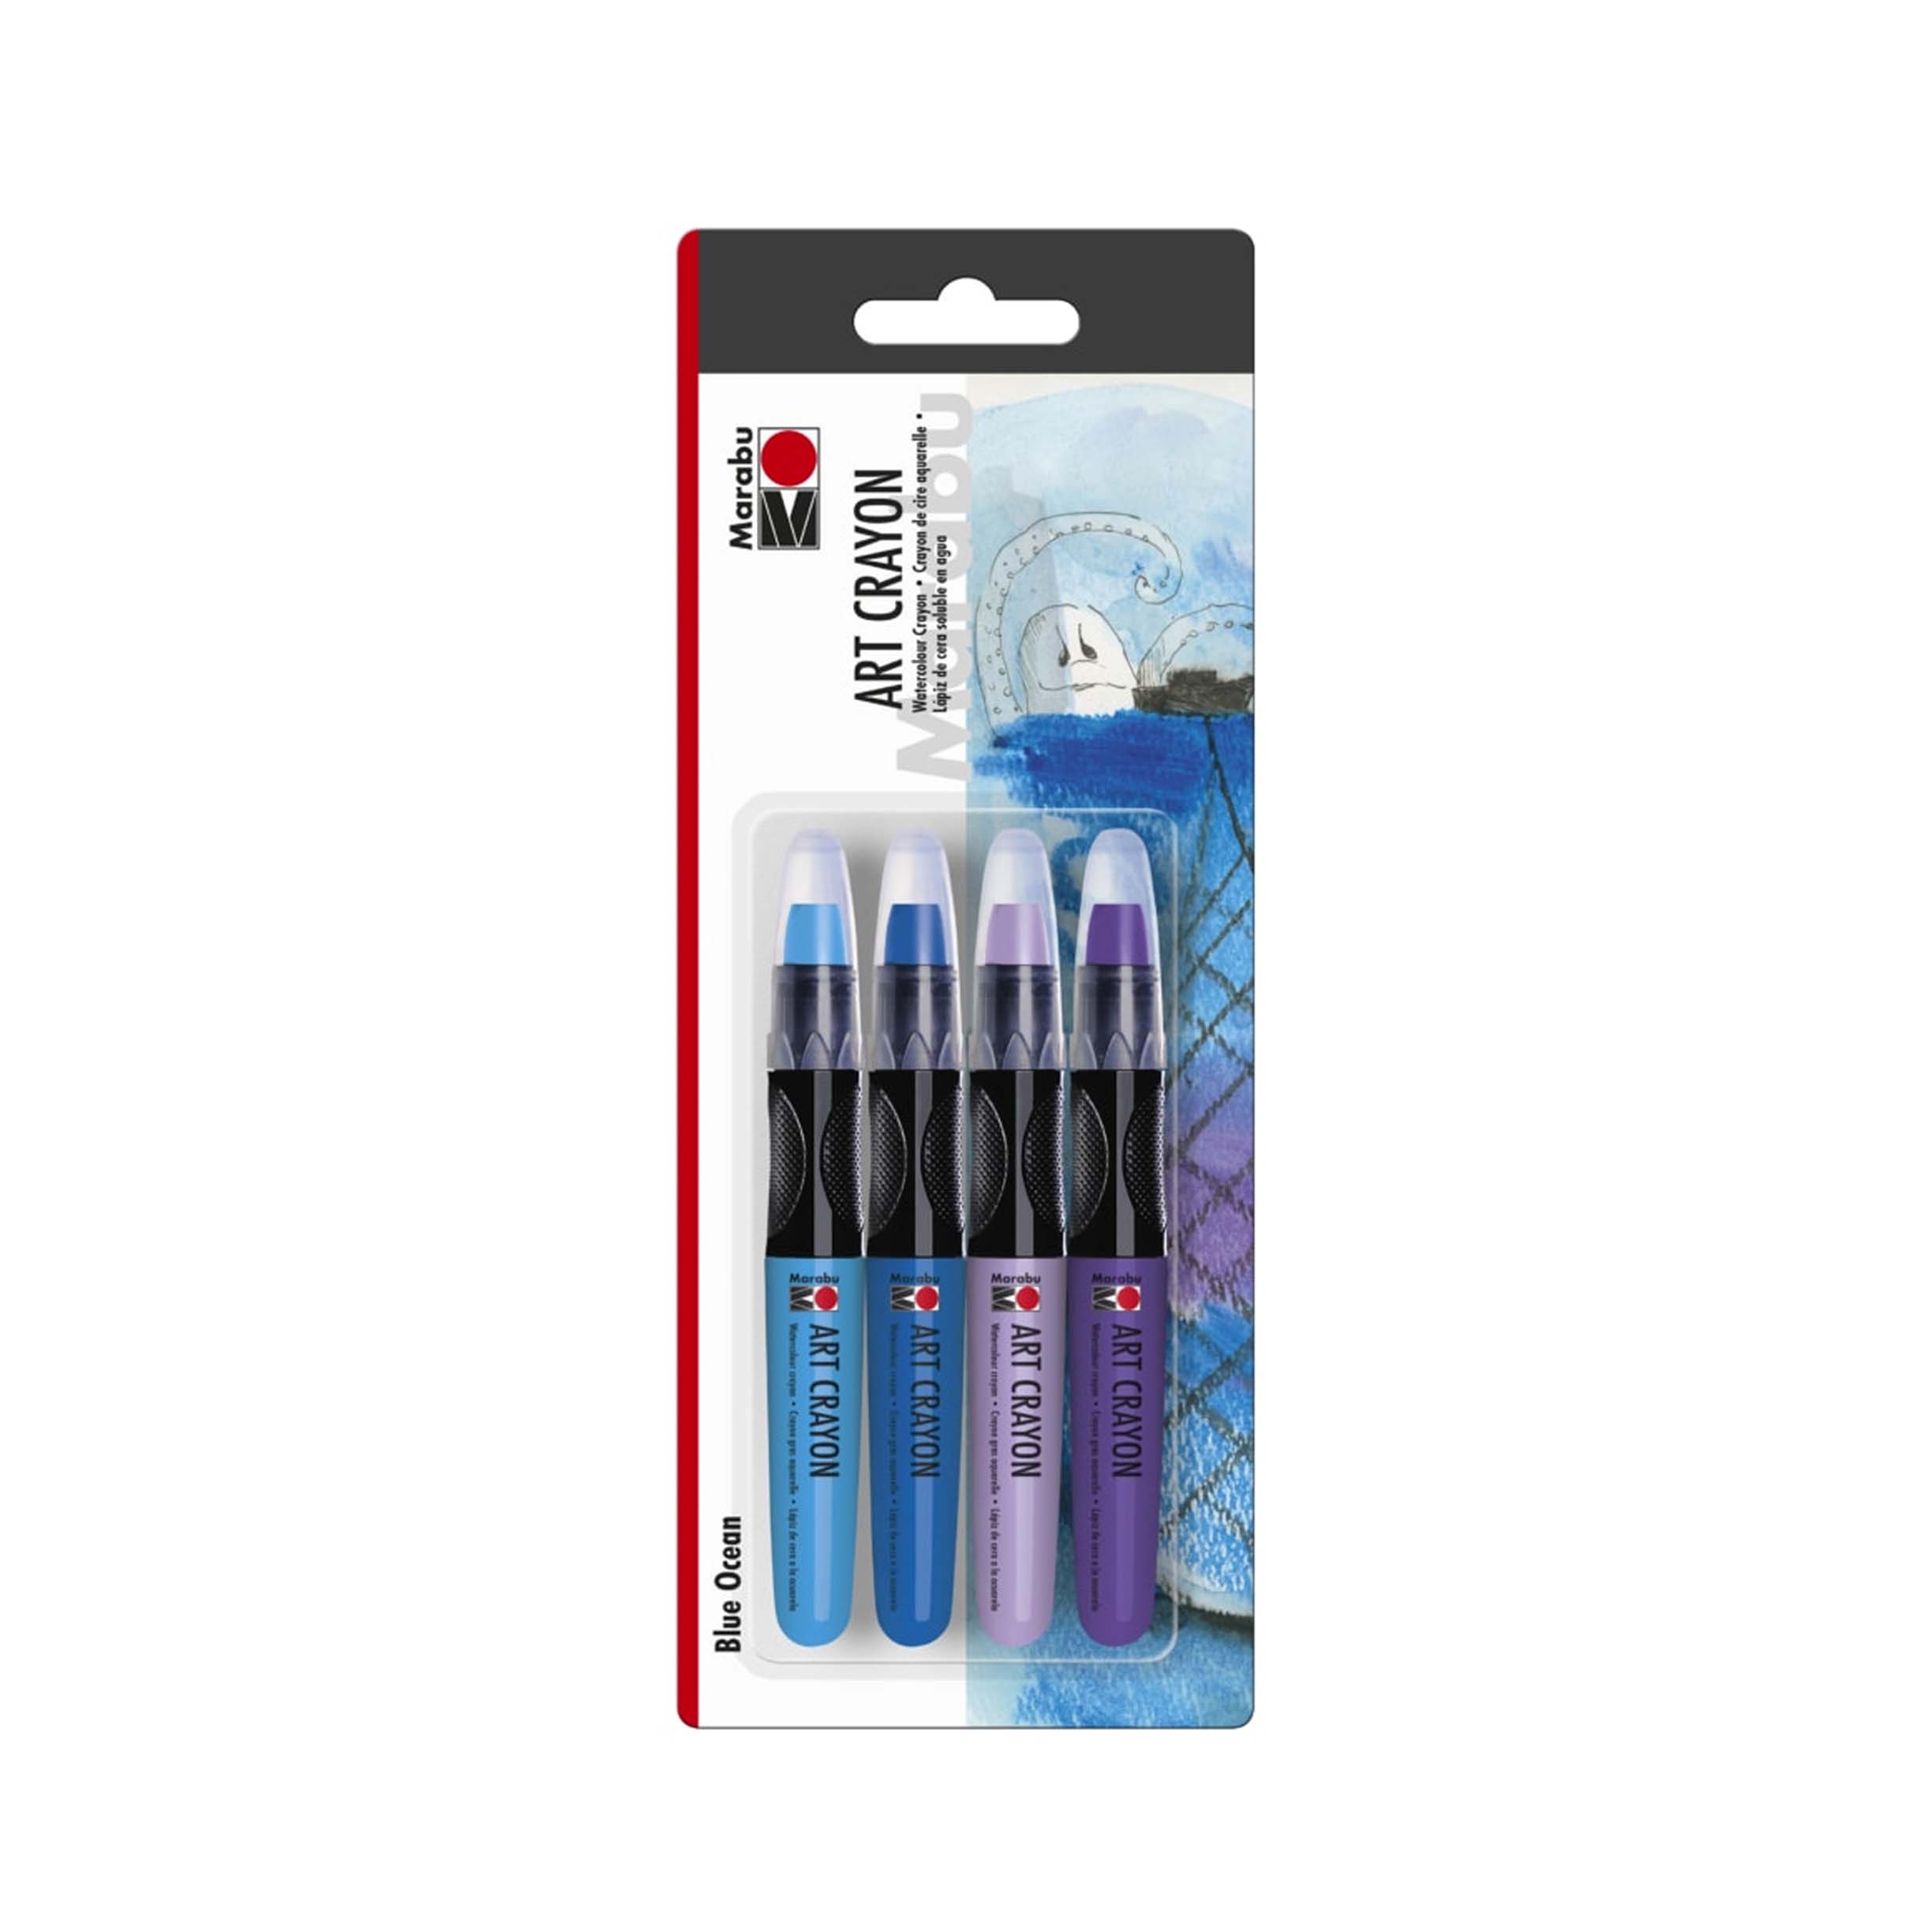 Marabu Mixed Media Art Crayons, Blue Ocean Set of 4